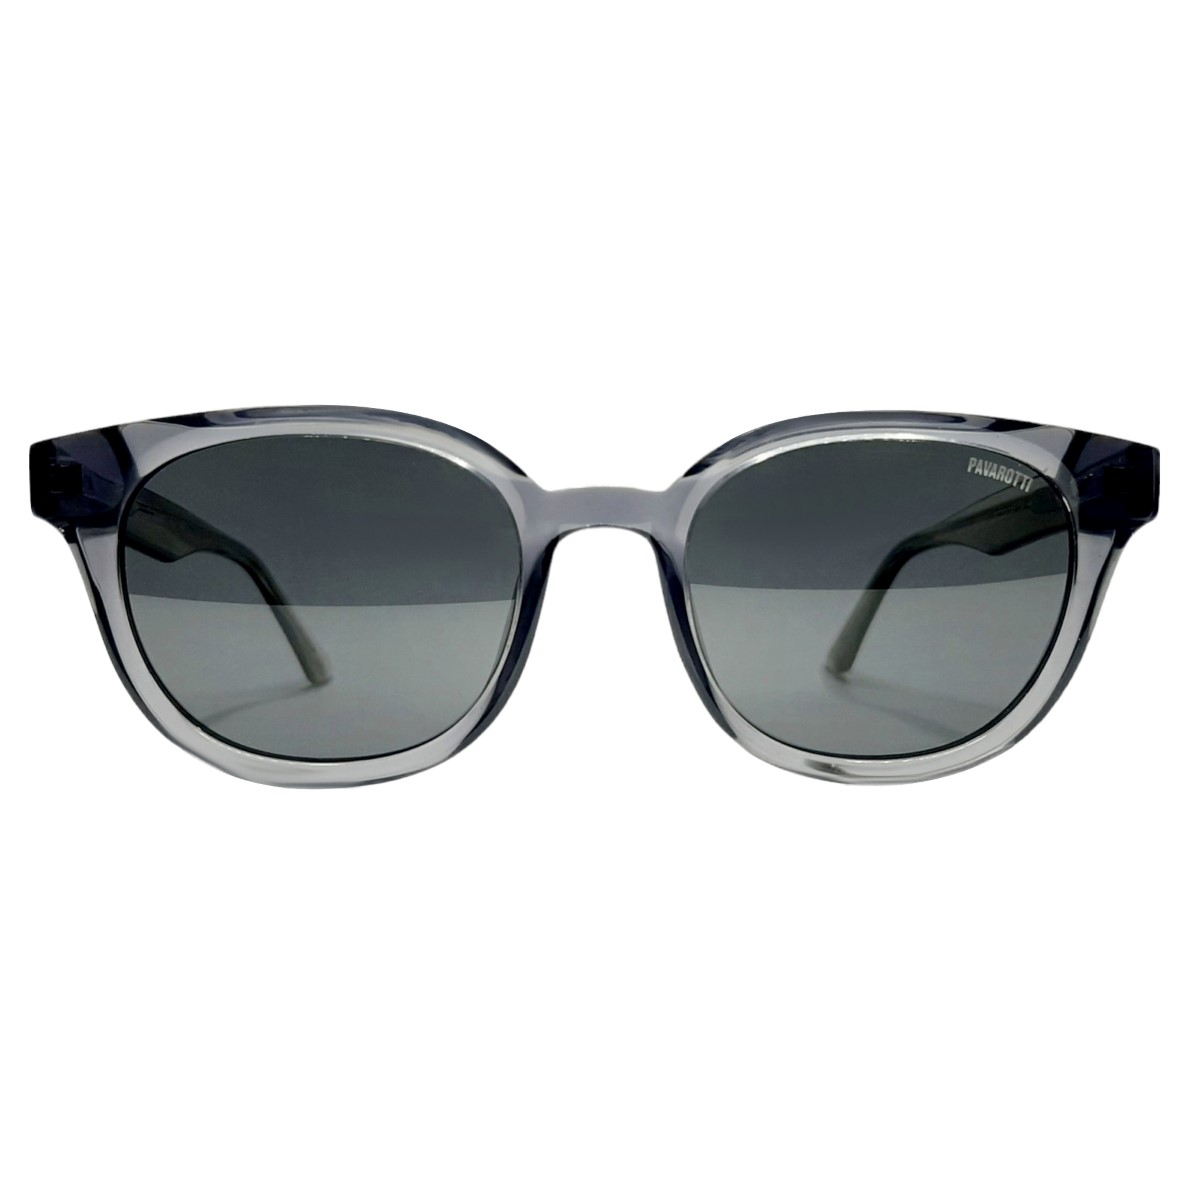 عینک آفتابی پاواروتی مدل FG6012c4